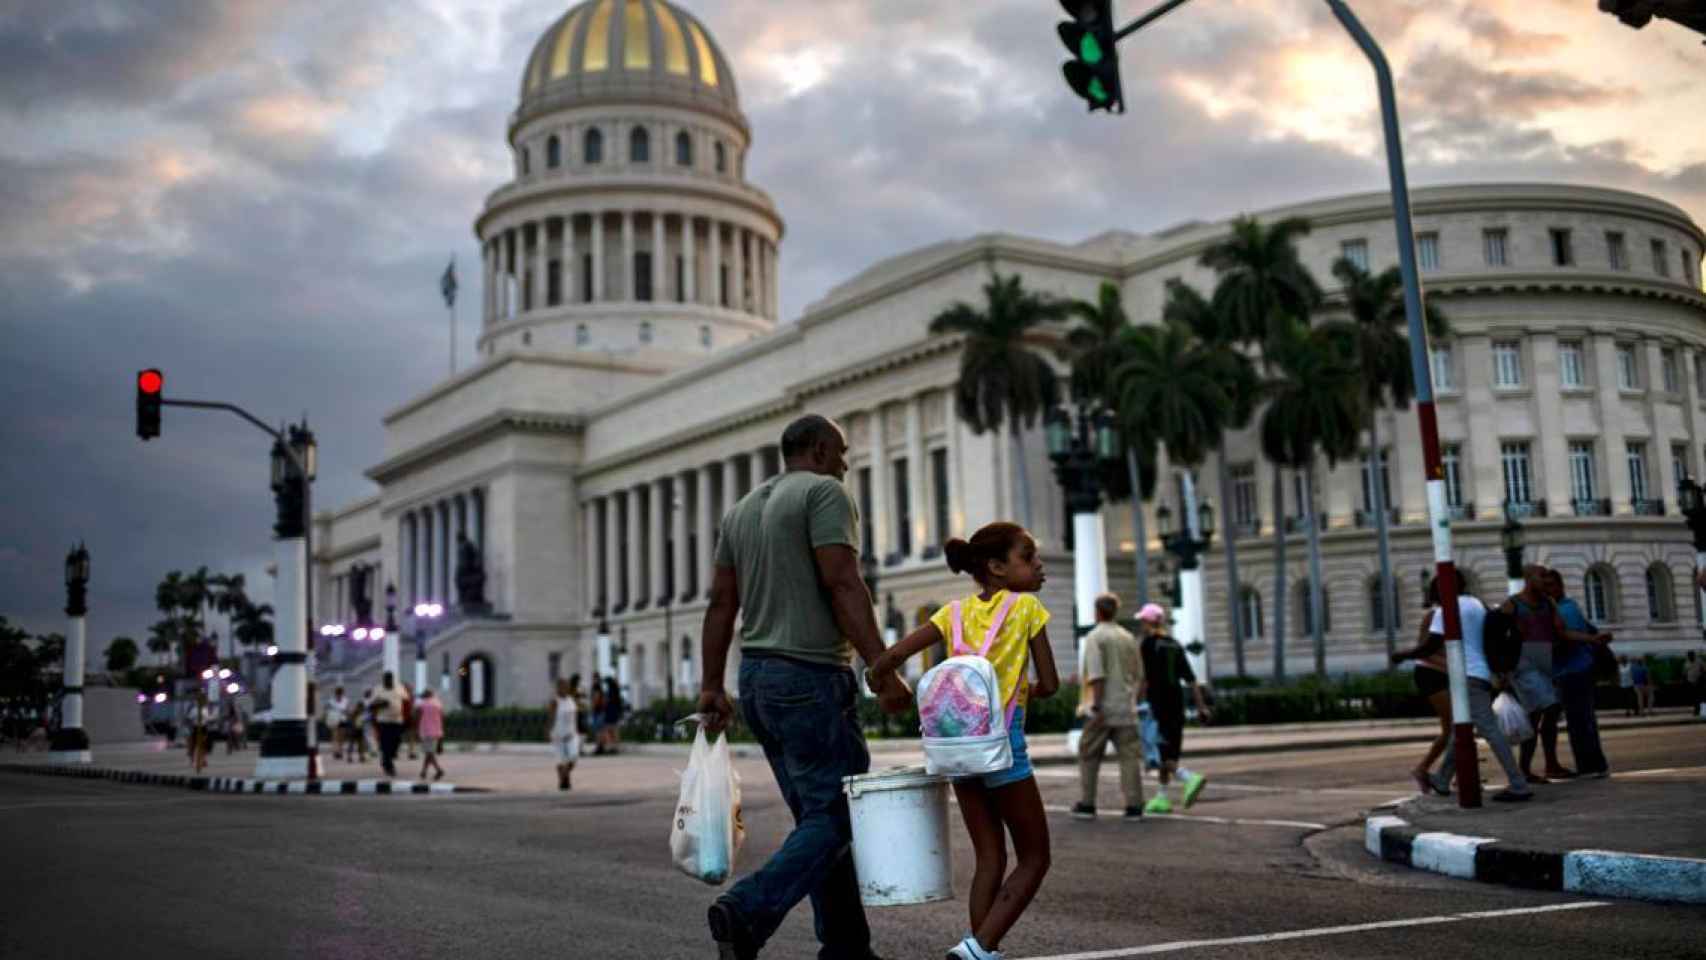 La Habana.